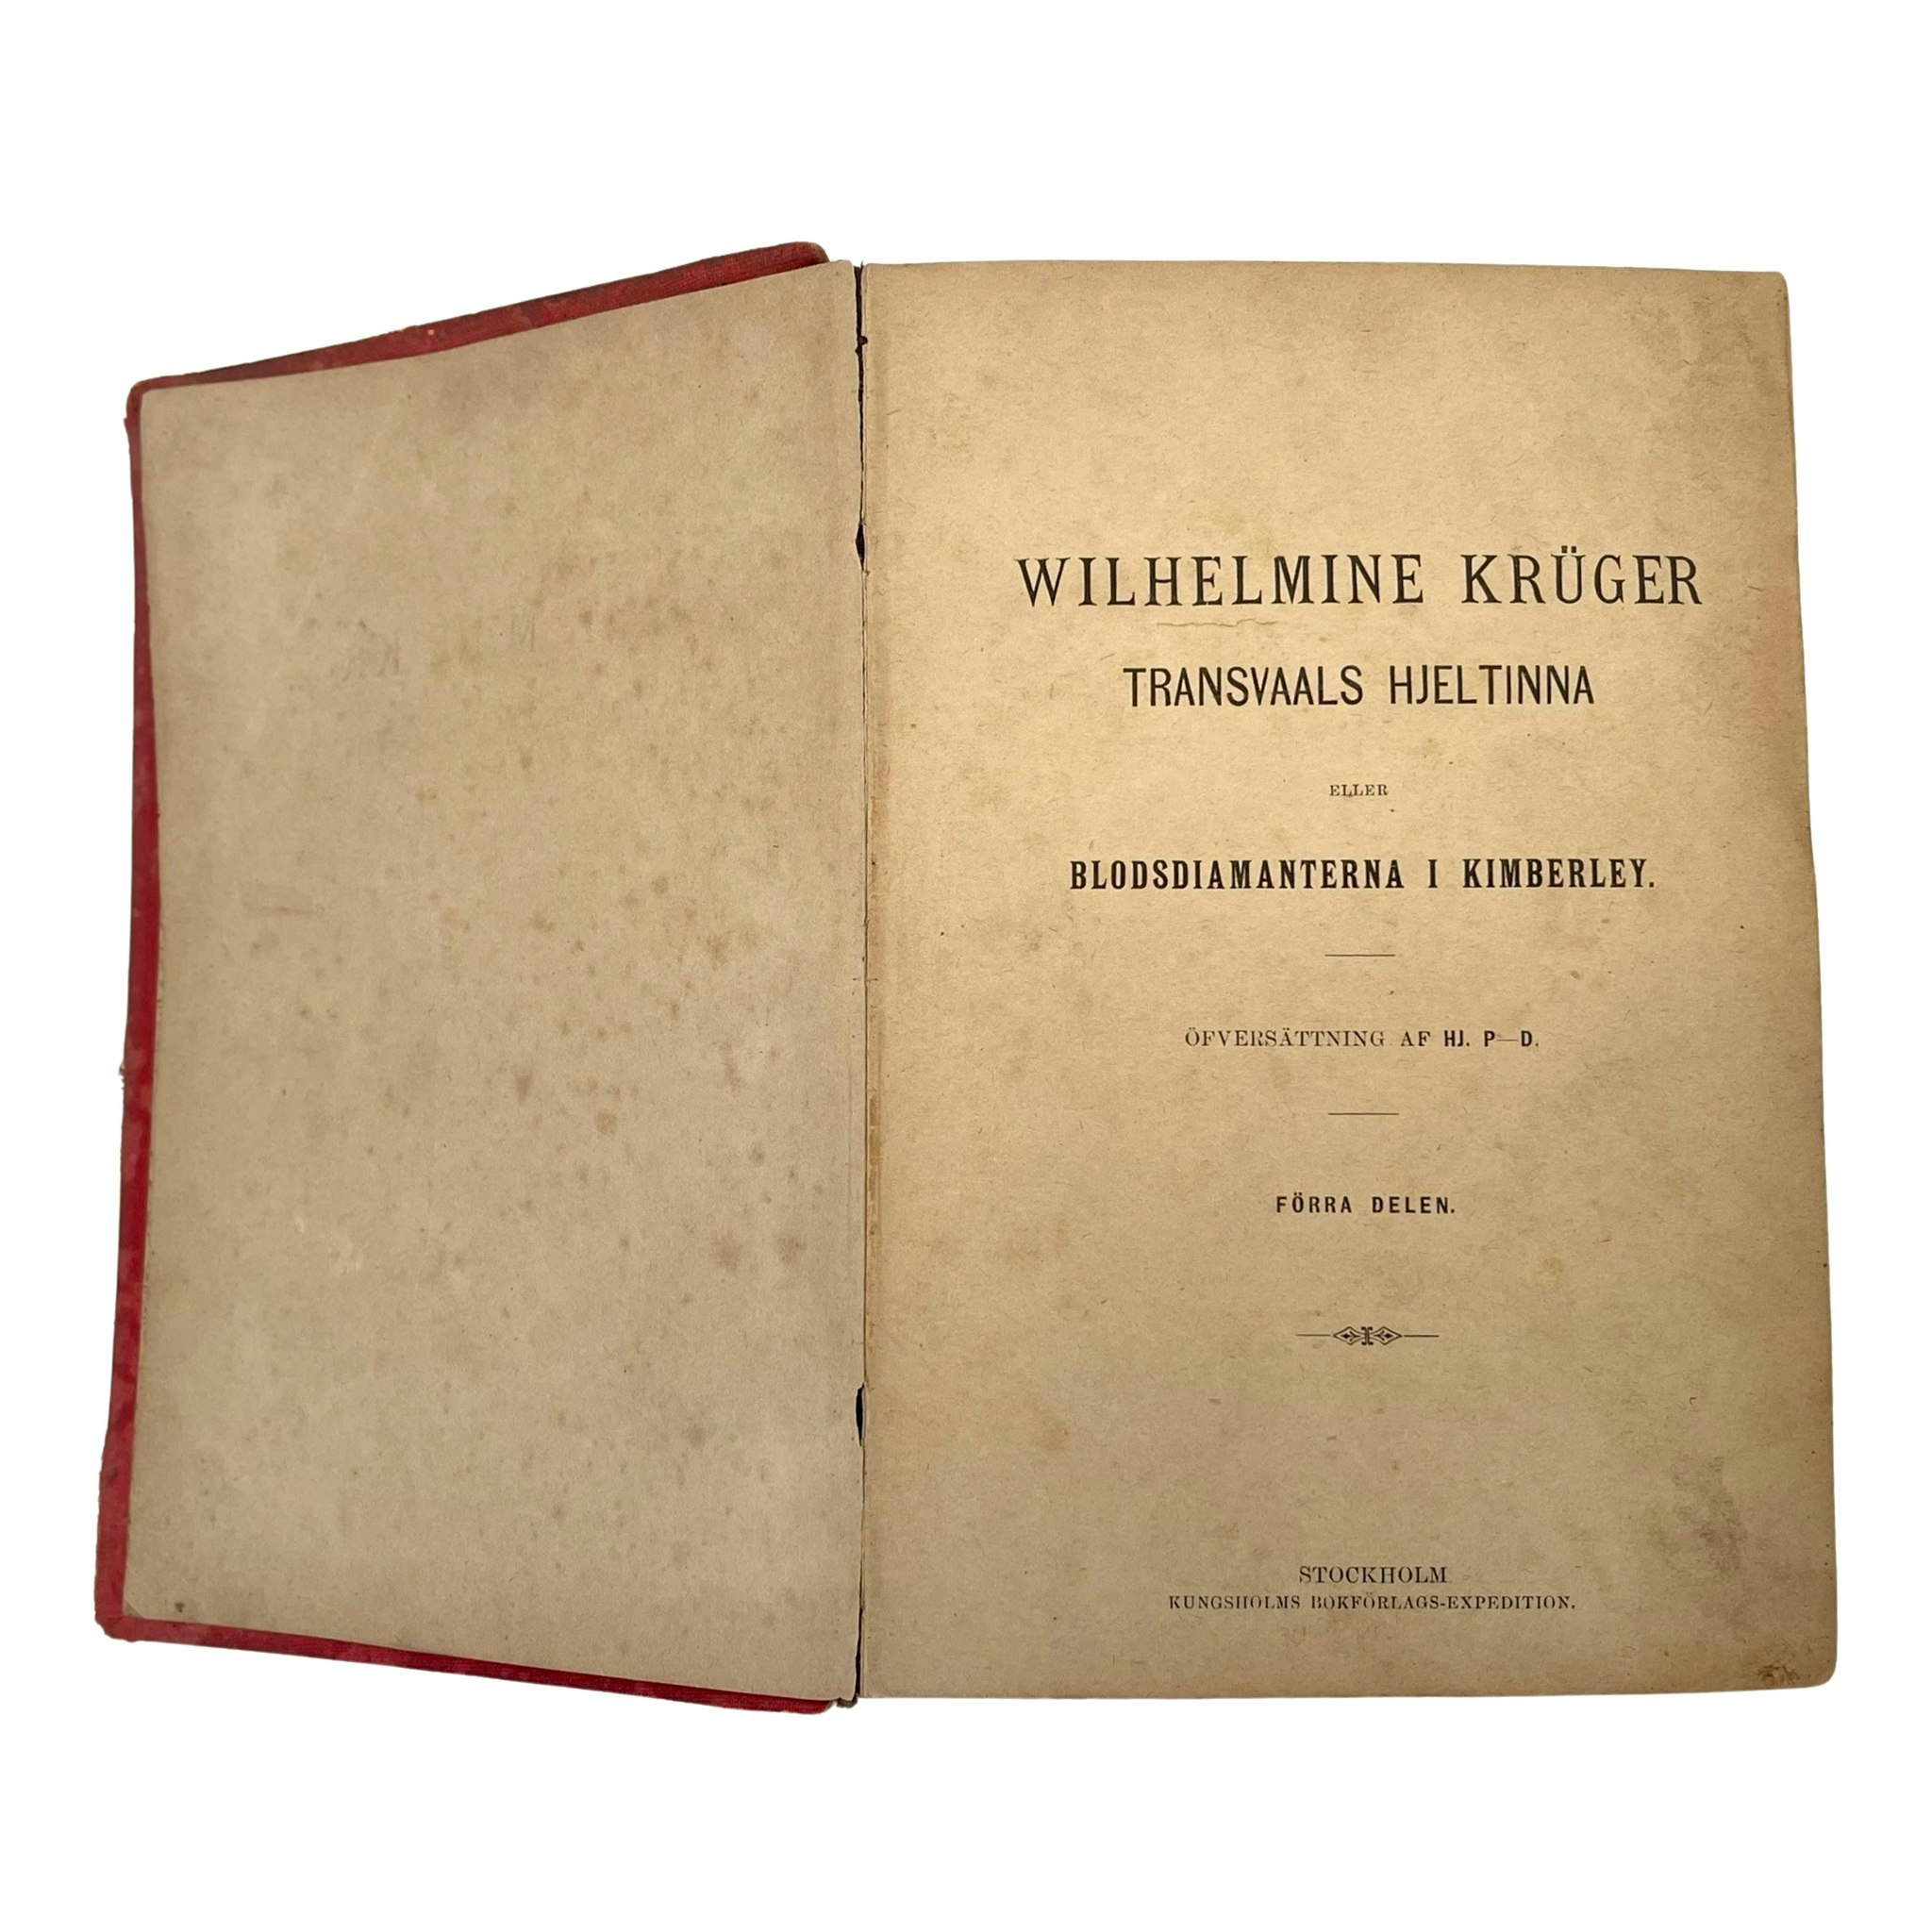 Wilhelmine Kruger 1901 transvaals hjältinna eller Blodsdiamanterna i kimberley